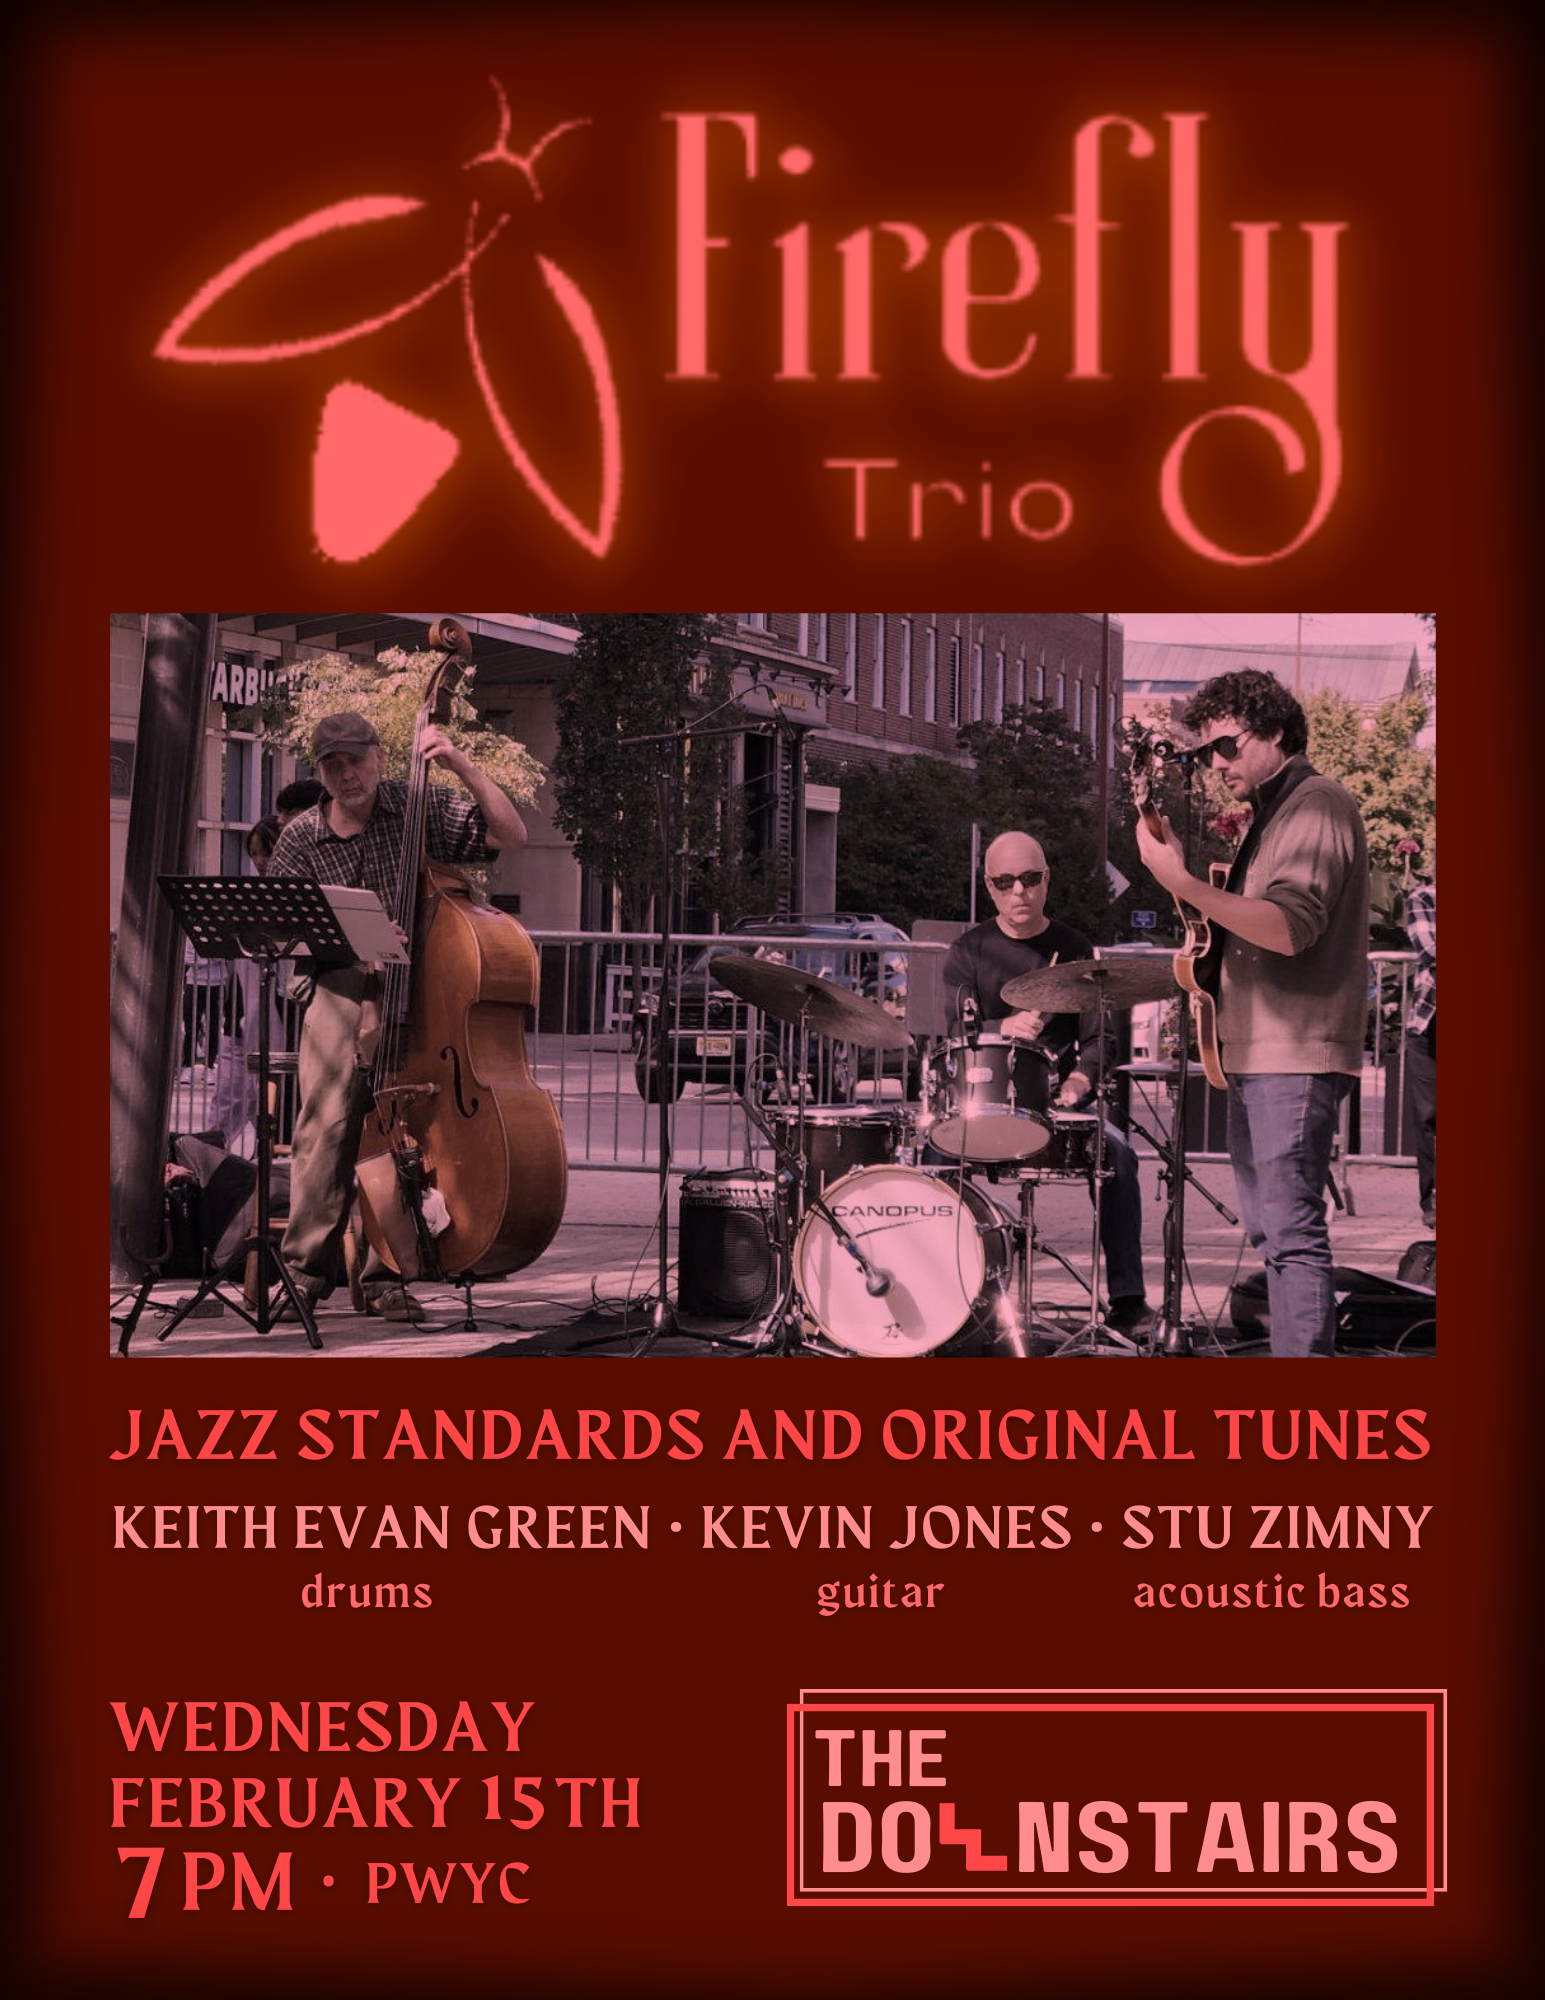 Firefly Trio